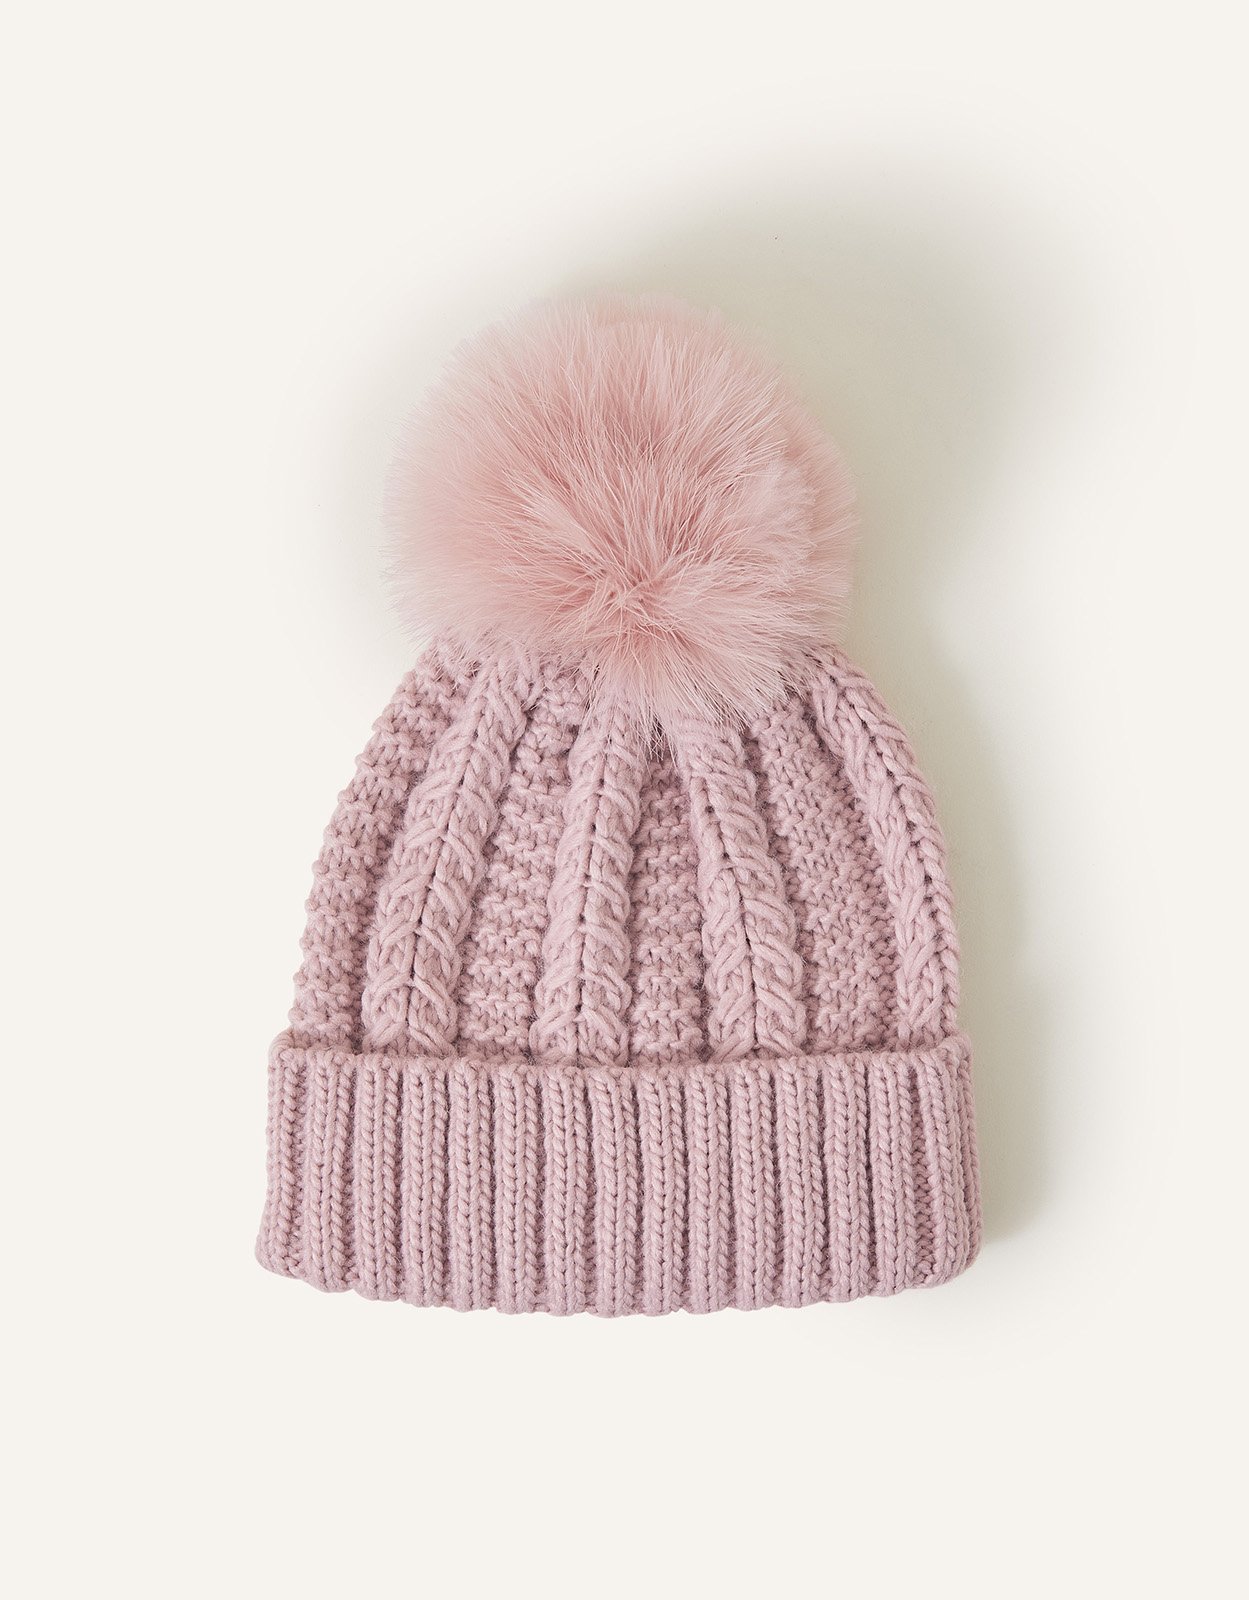 Accessorize Faux Fur Pom-Pom Beanie Hat Pink